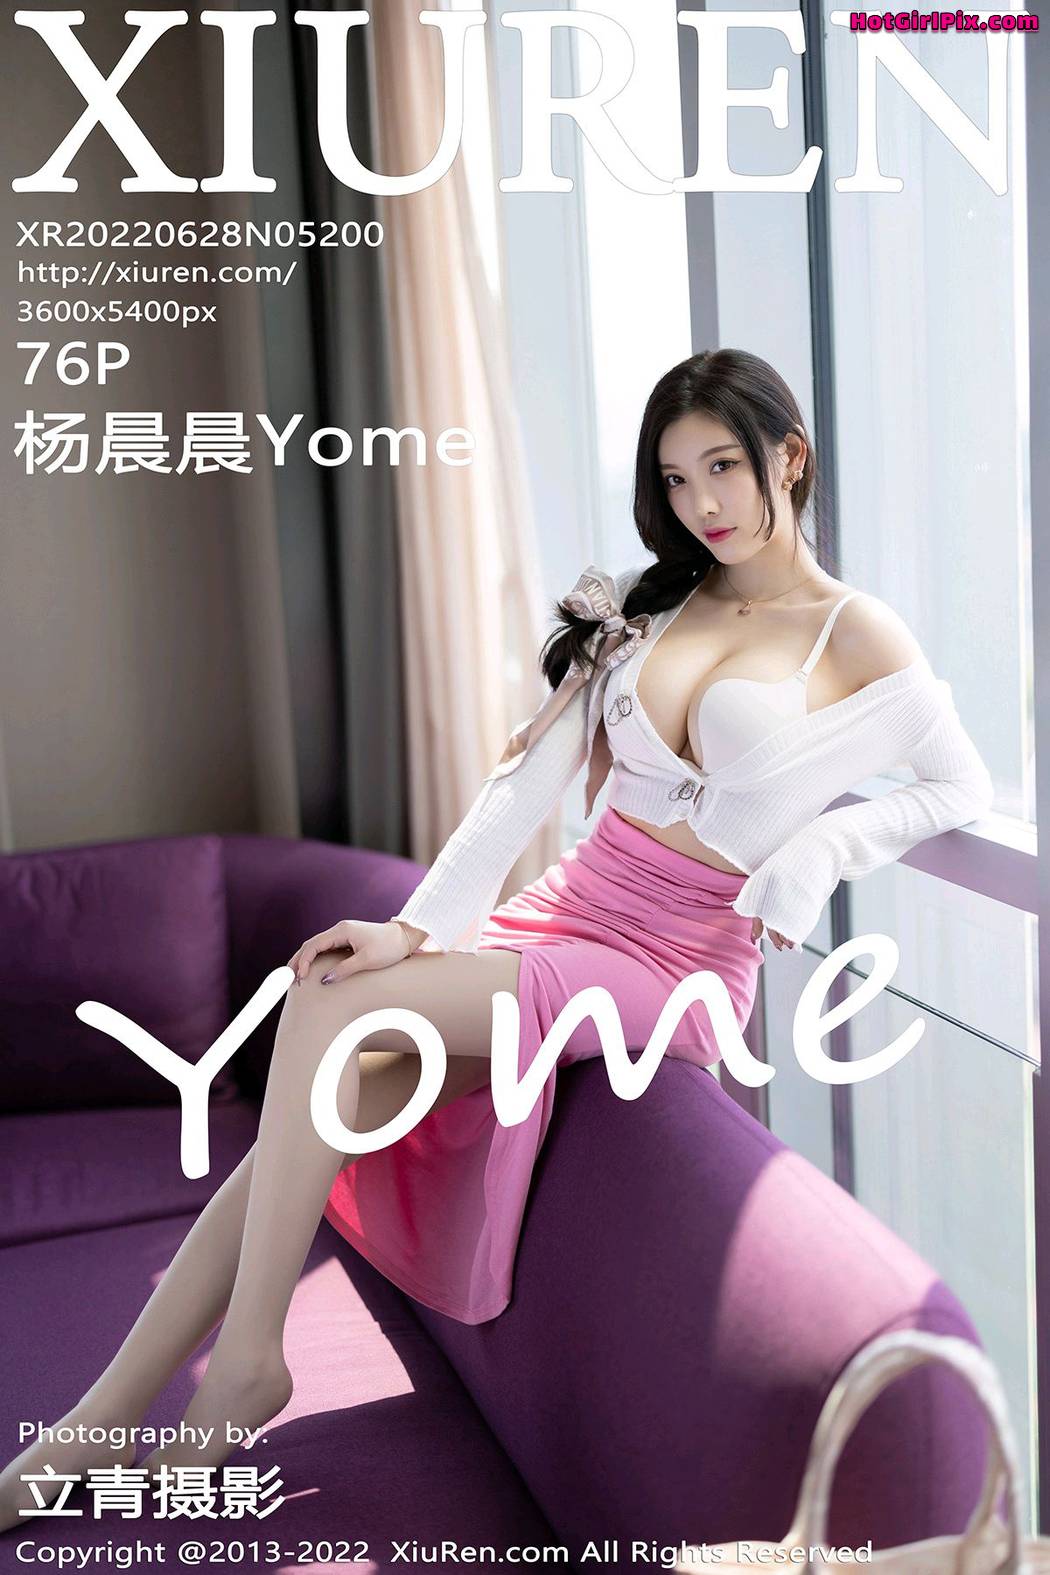 [XIUREN] No.5200 Yang Chen Chen 杨晨晨Yome (Yang Chen Chen 杨晨晨sugar) Cover Photo